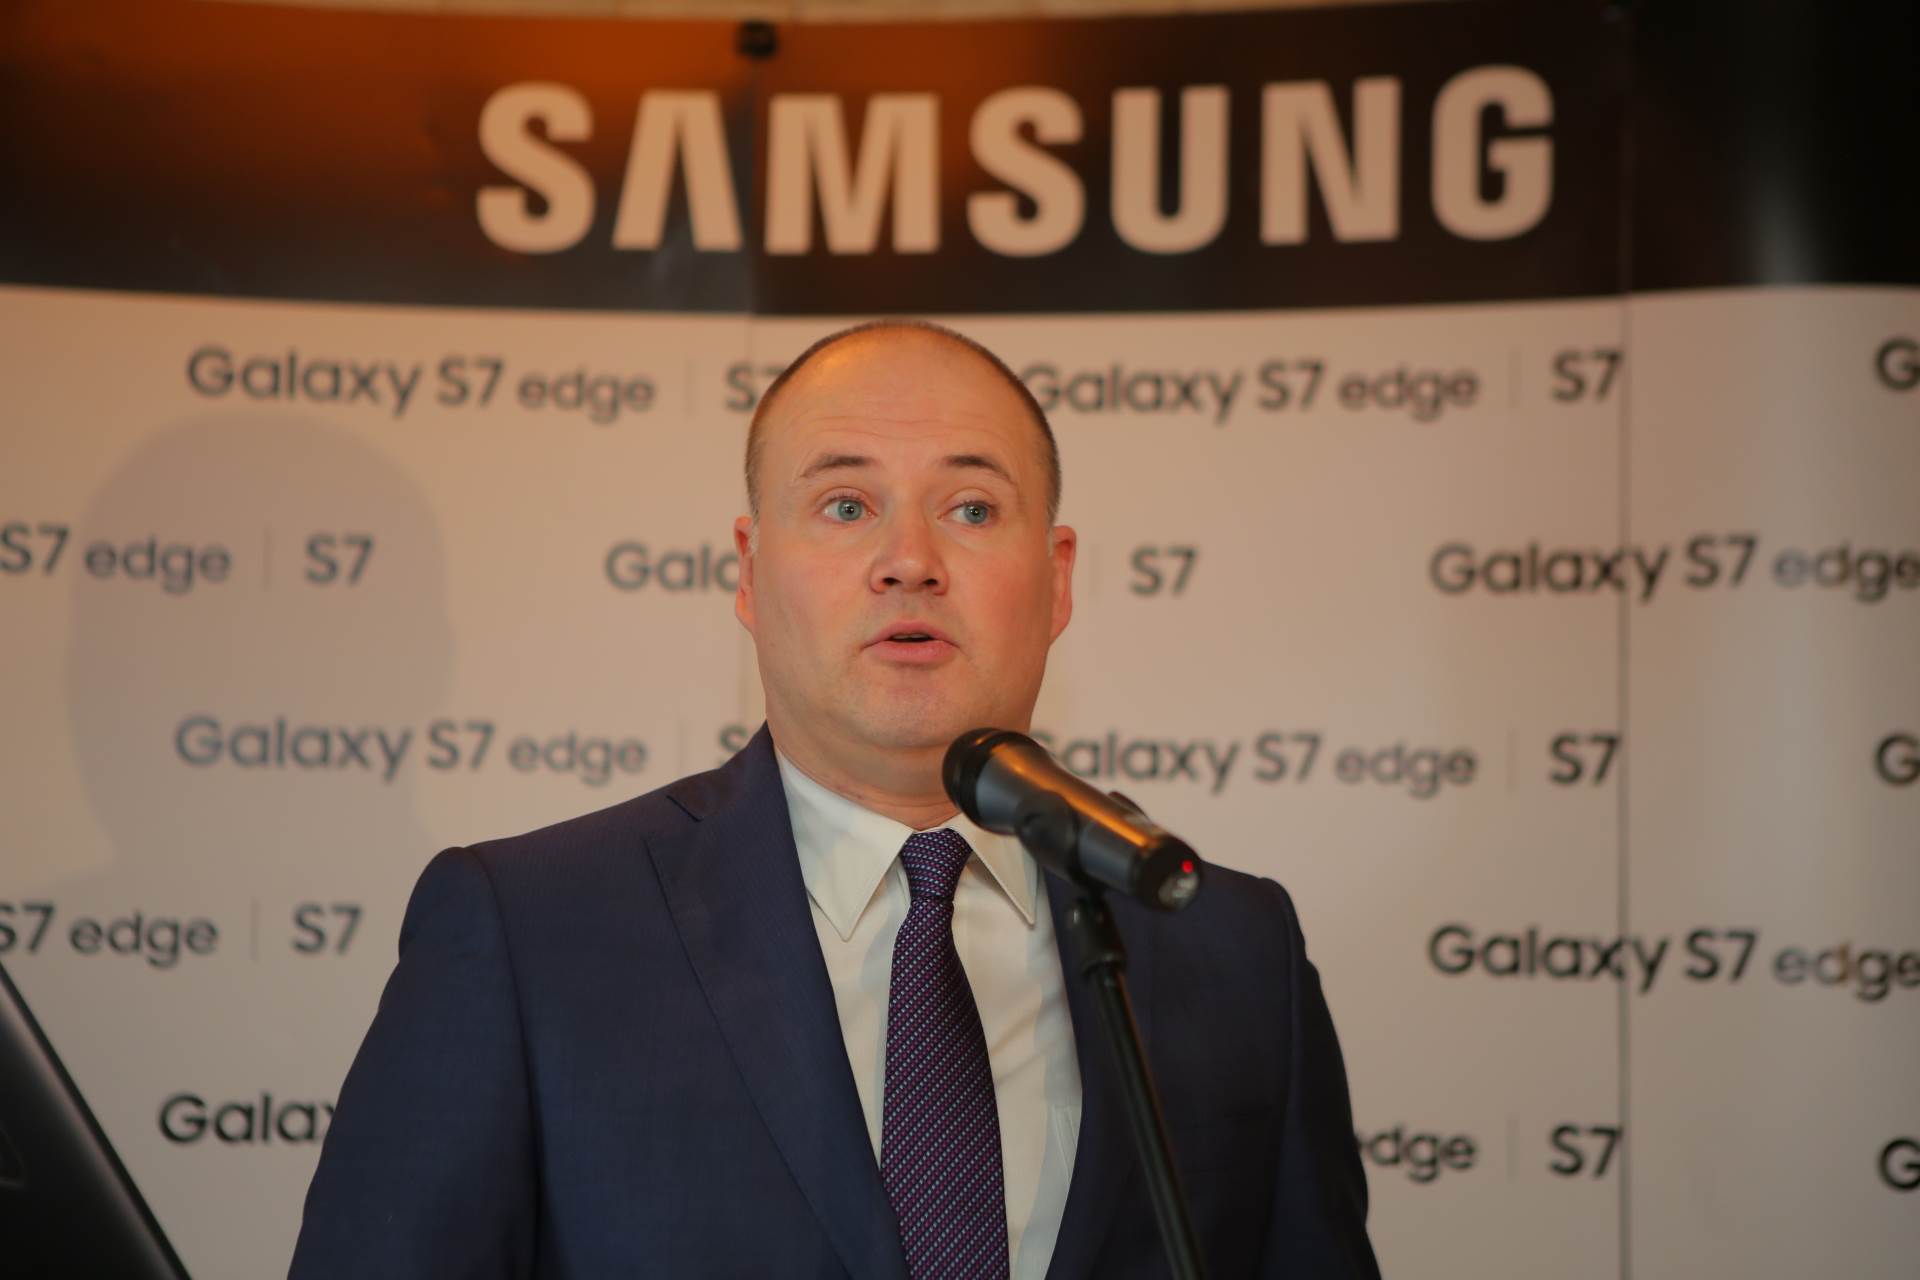  Milan Vujović, Samsung Srbija. 